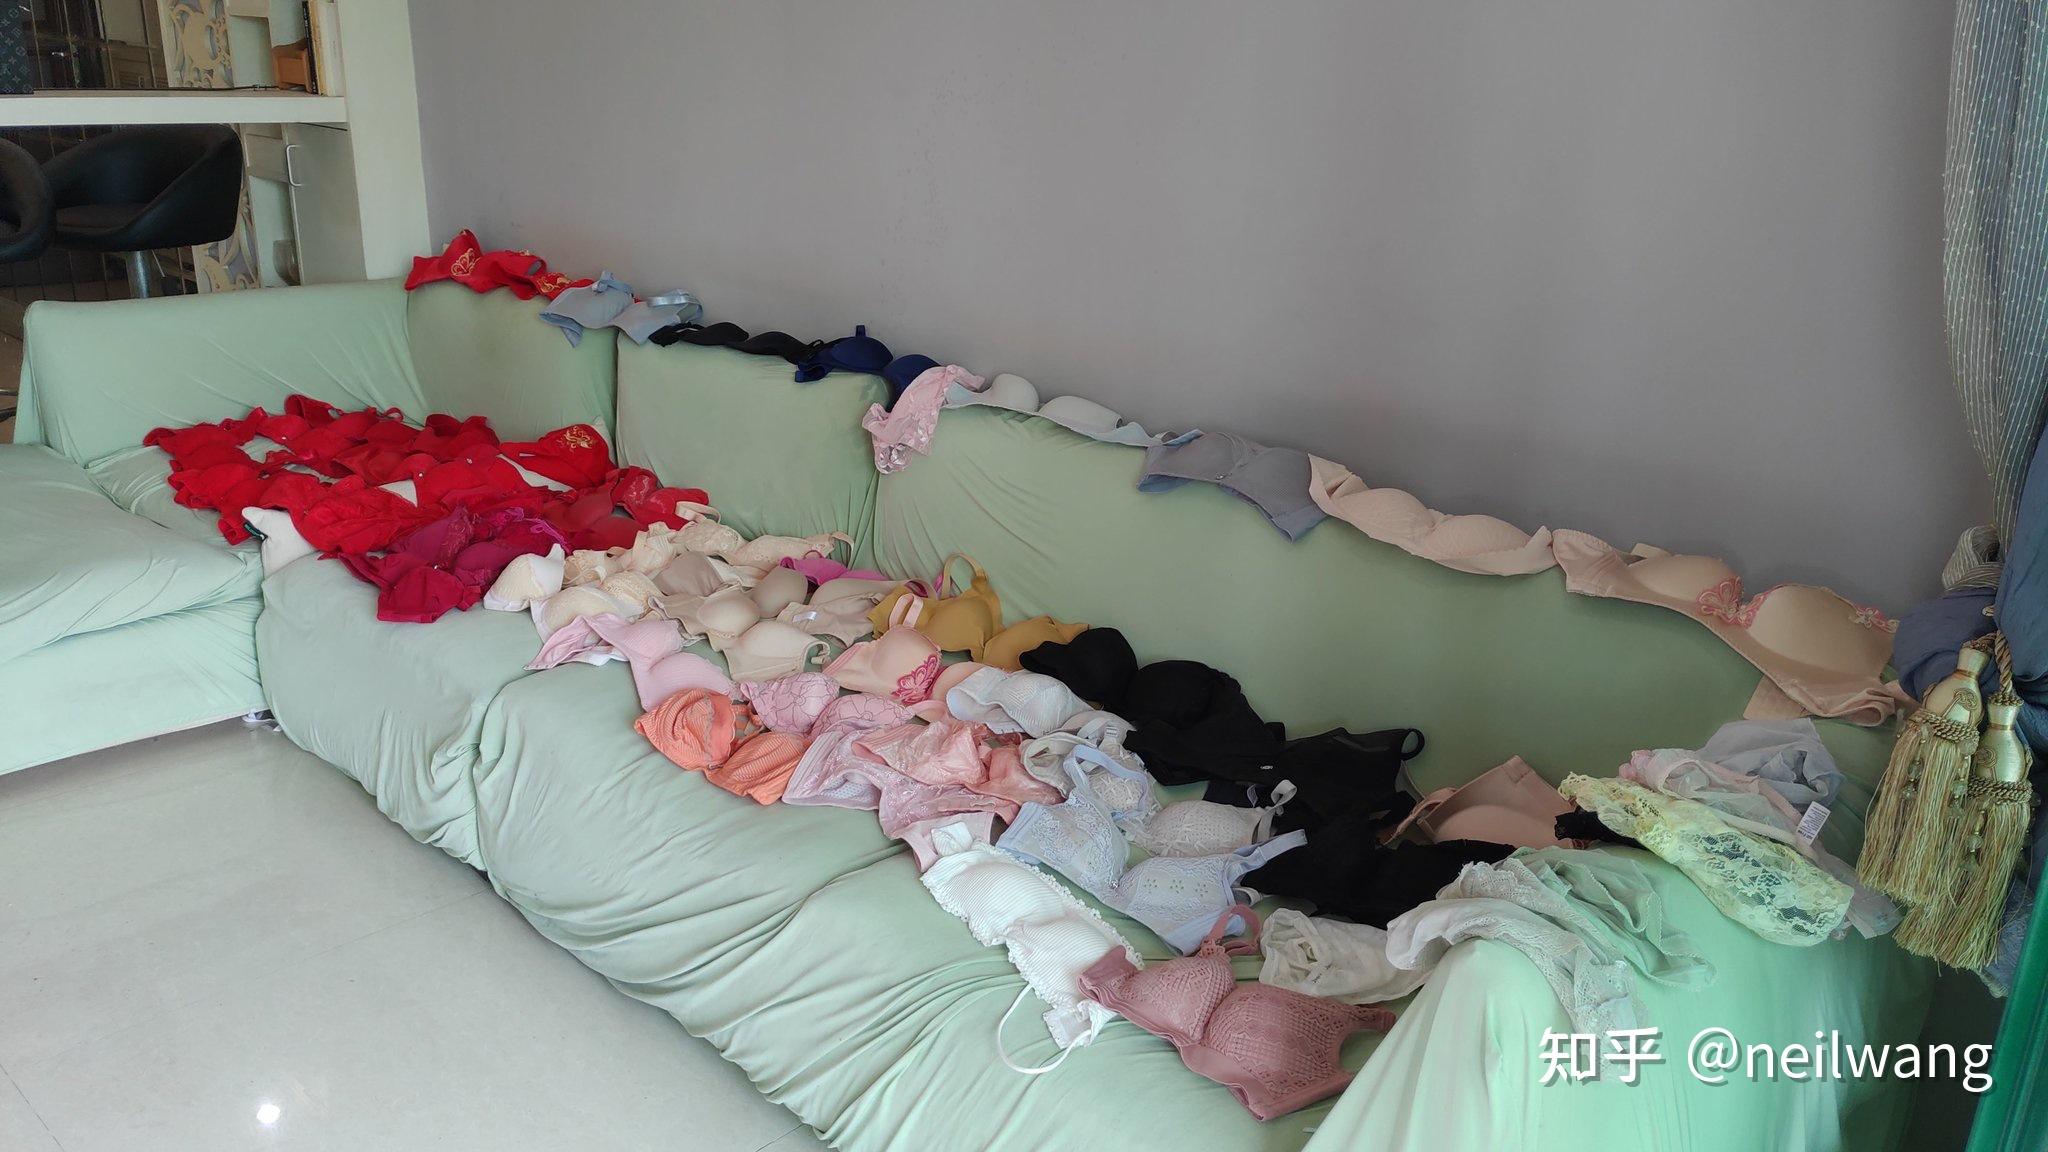 南京航空航天大学一男生男扮女装进女寝偷内衣他将受到哪些处分是否还